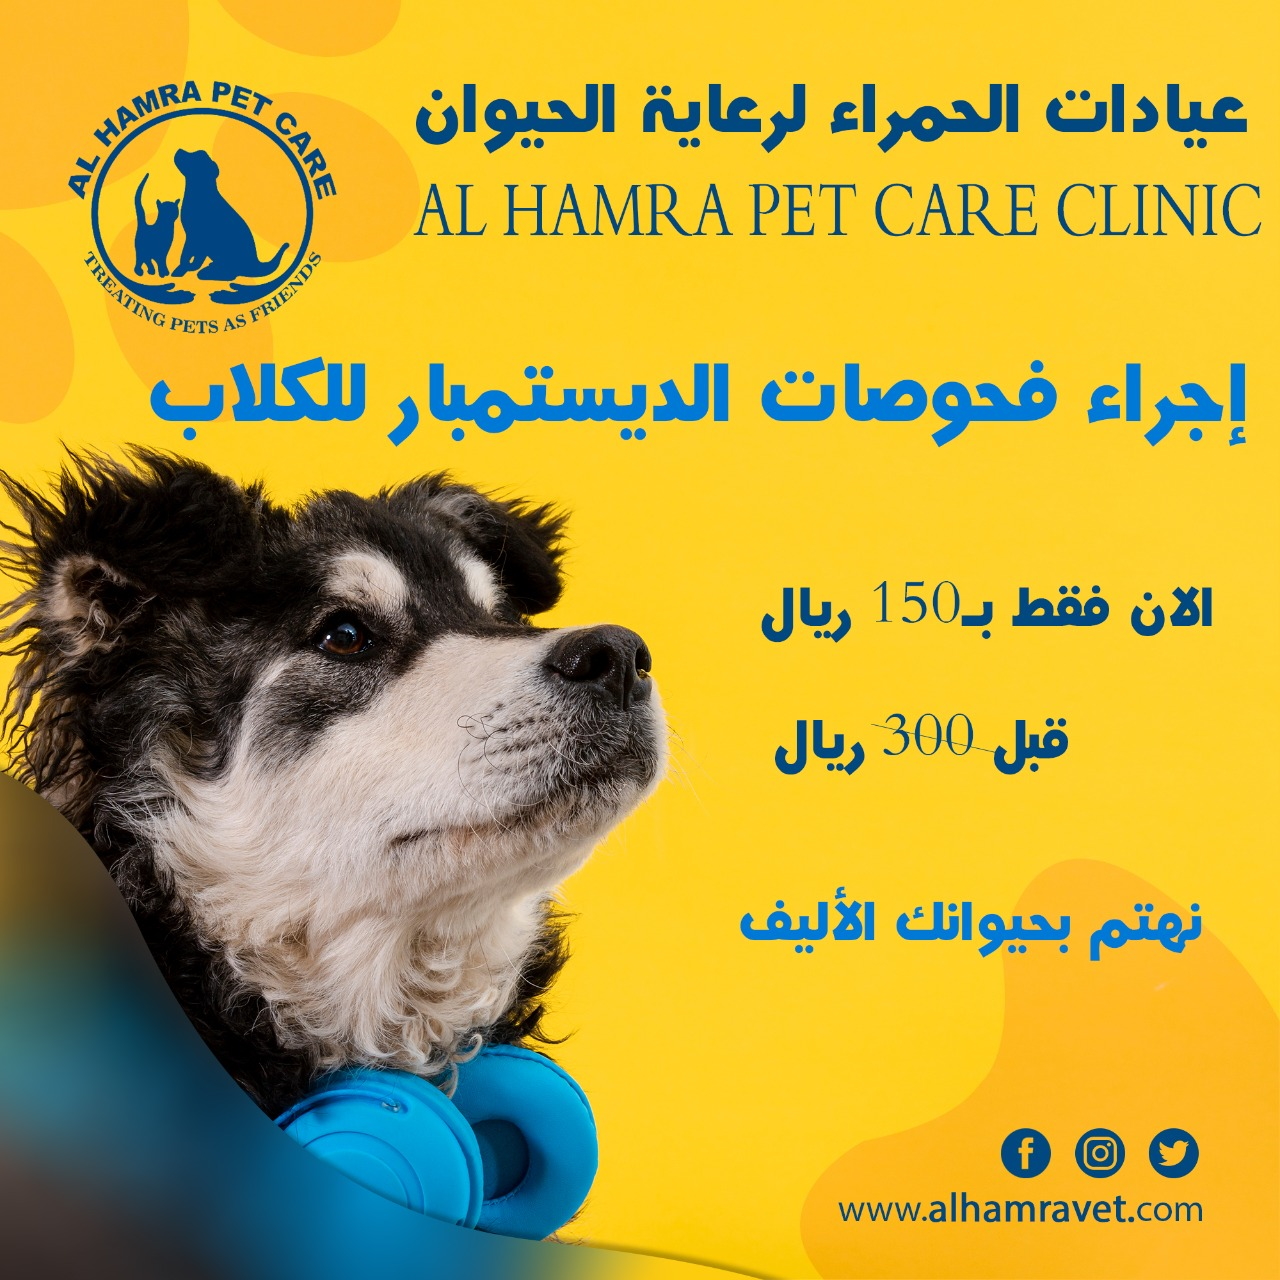 Al Hamra Pet Care Clinic